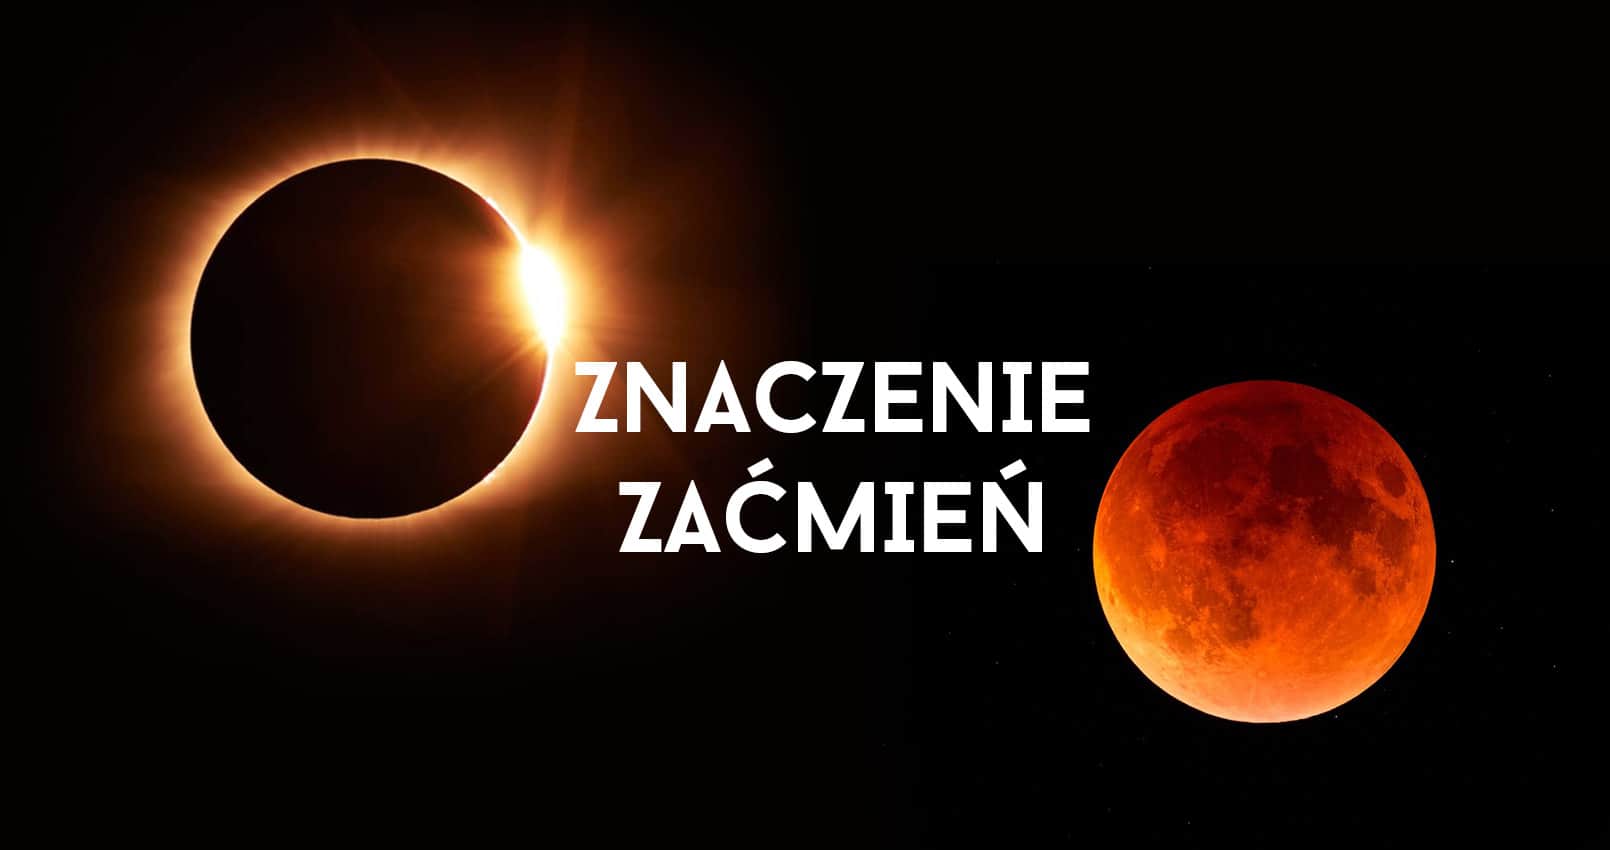 You are currently viewing Znaczenie zaćmień